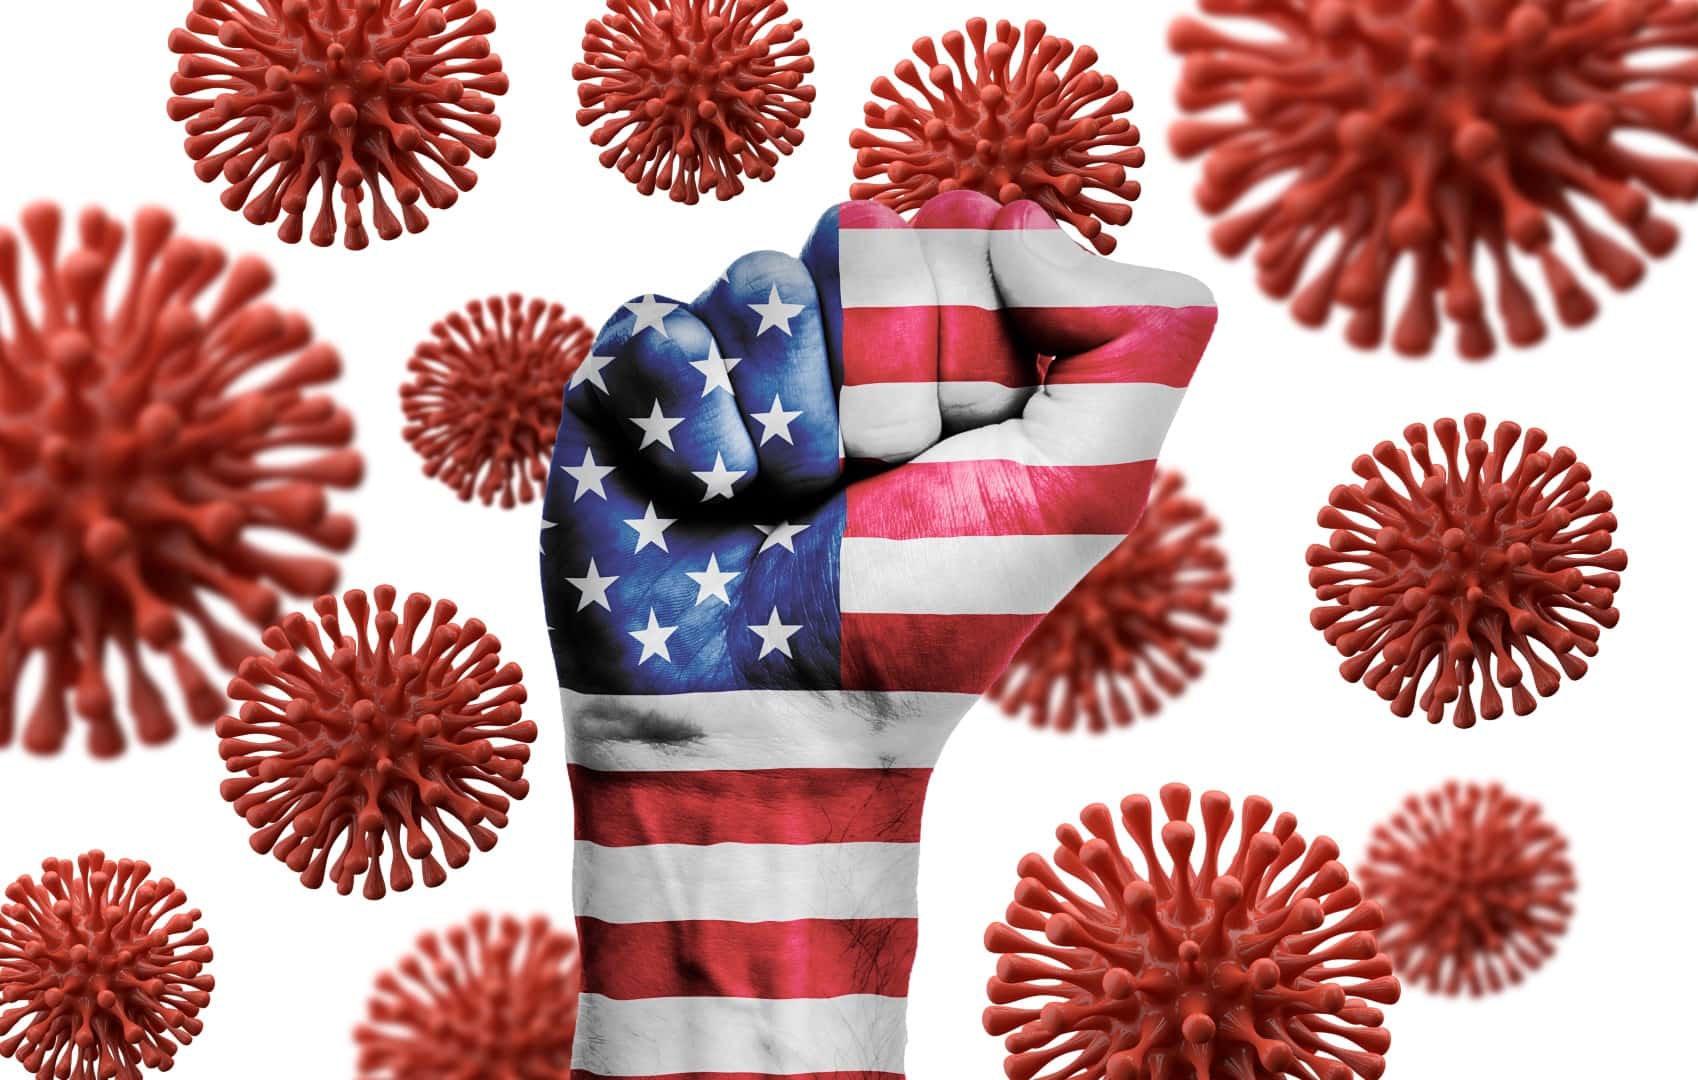 USA flag fist fighting off coronavius disease